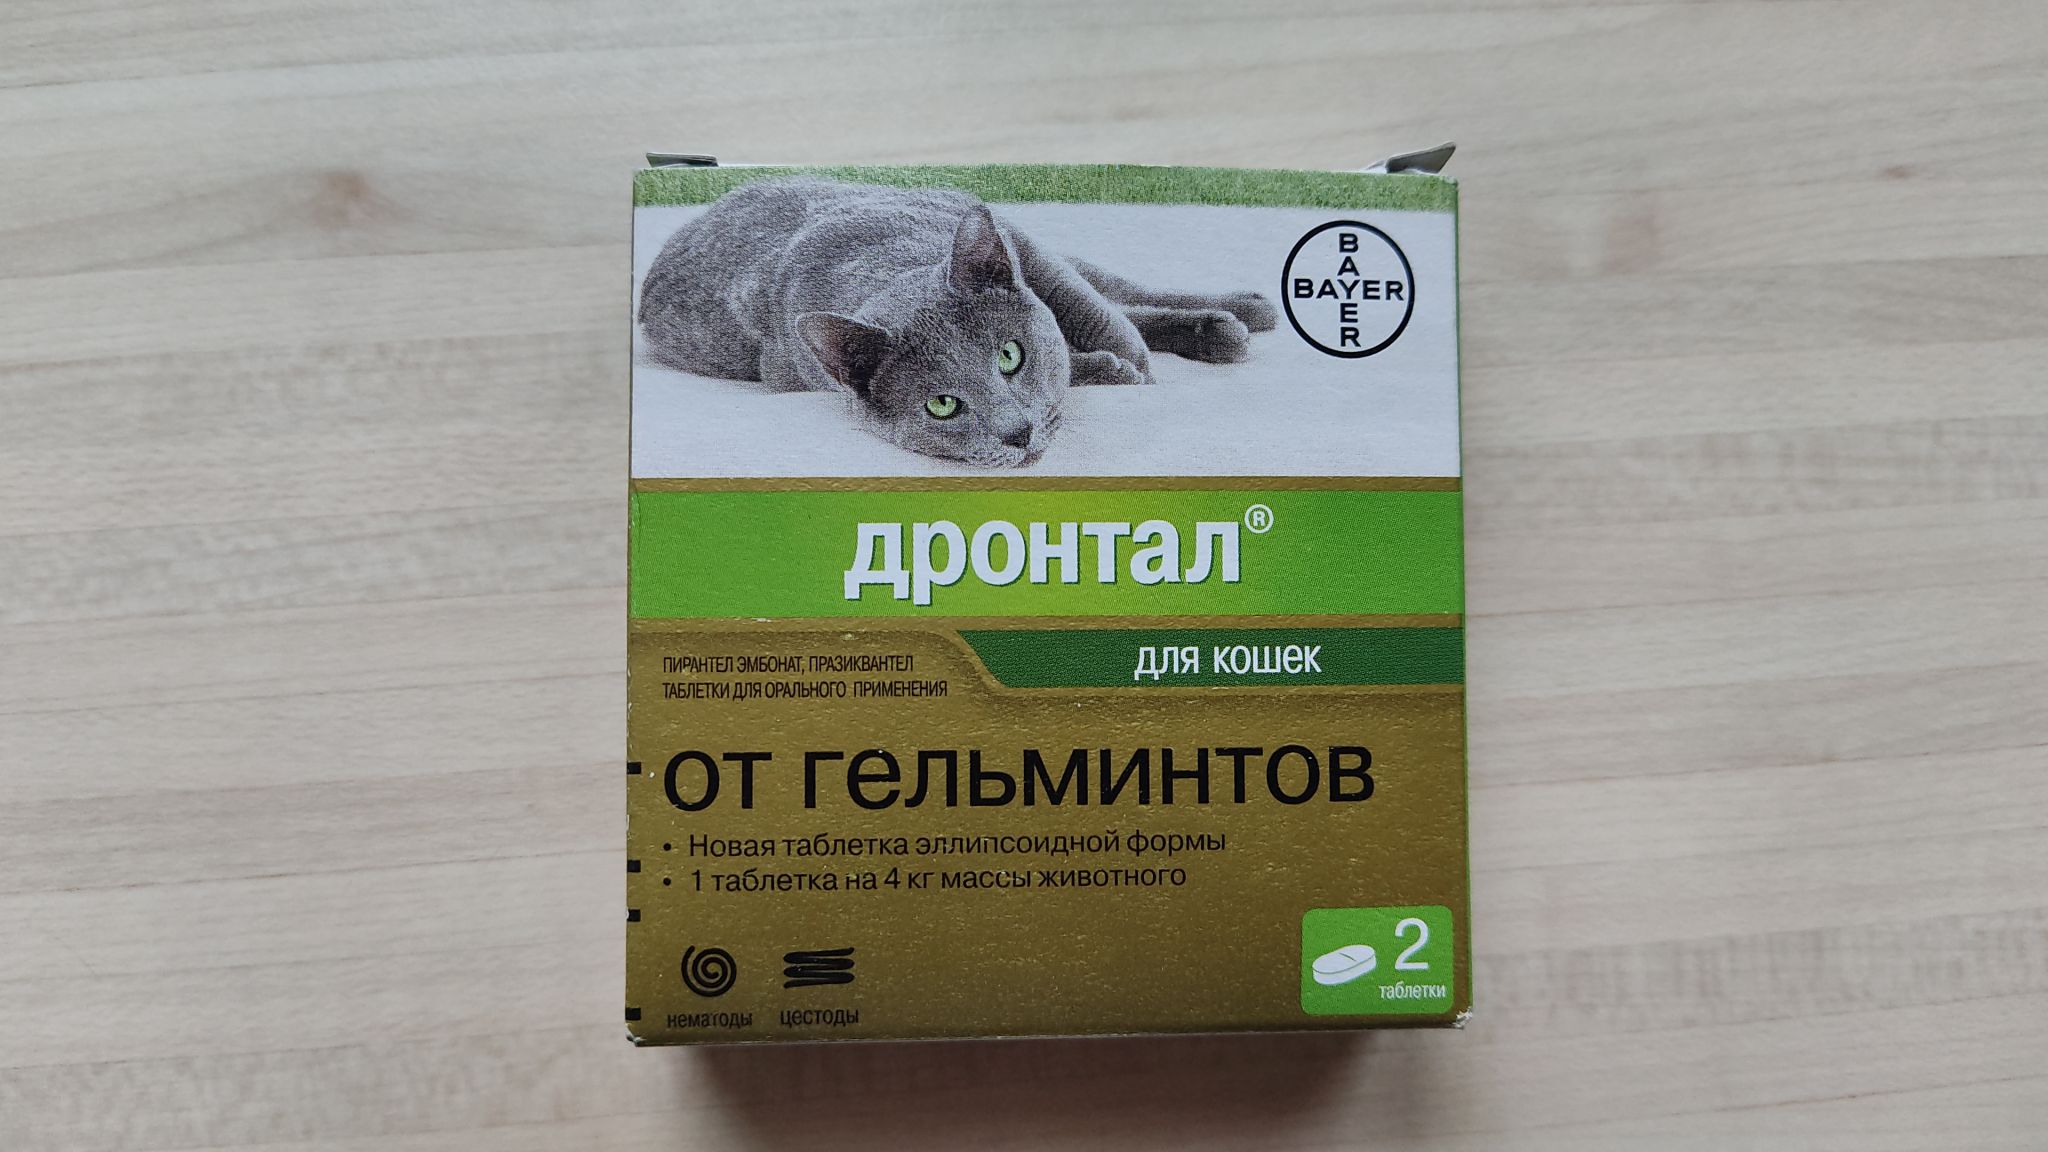 «дронтал» для кошек: инструкция по применению